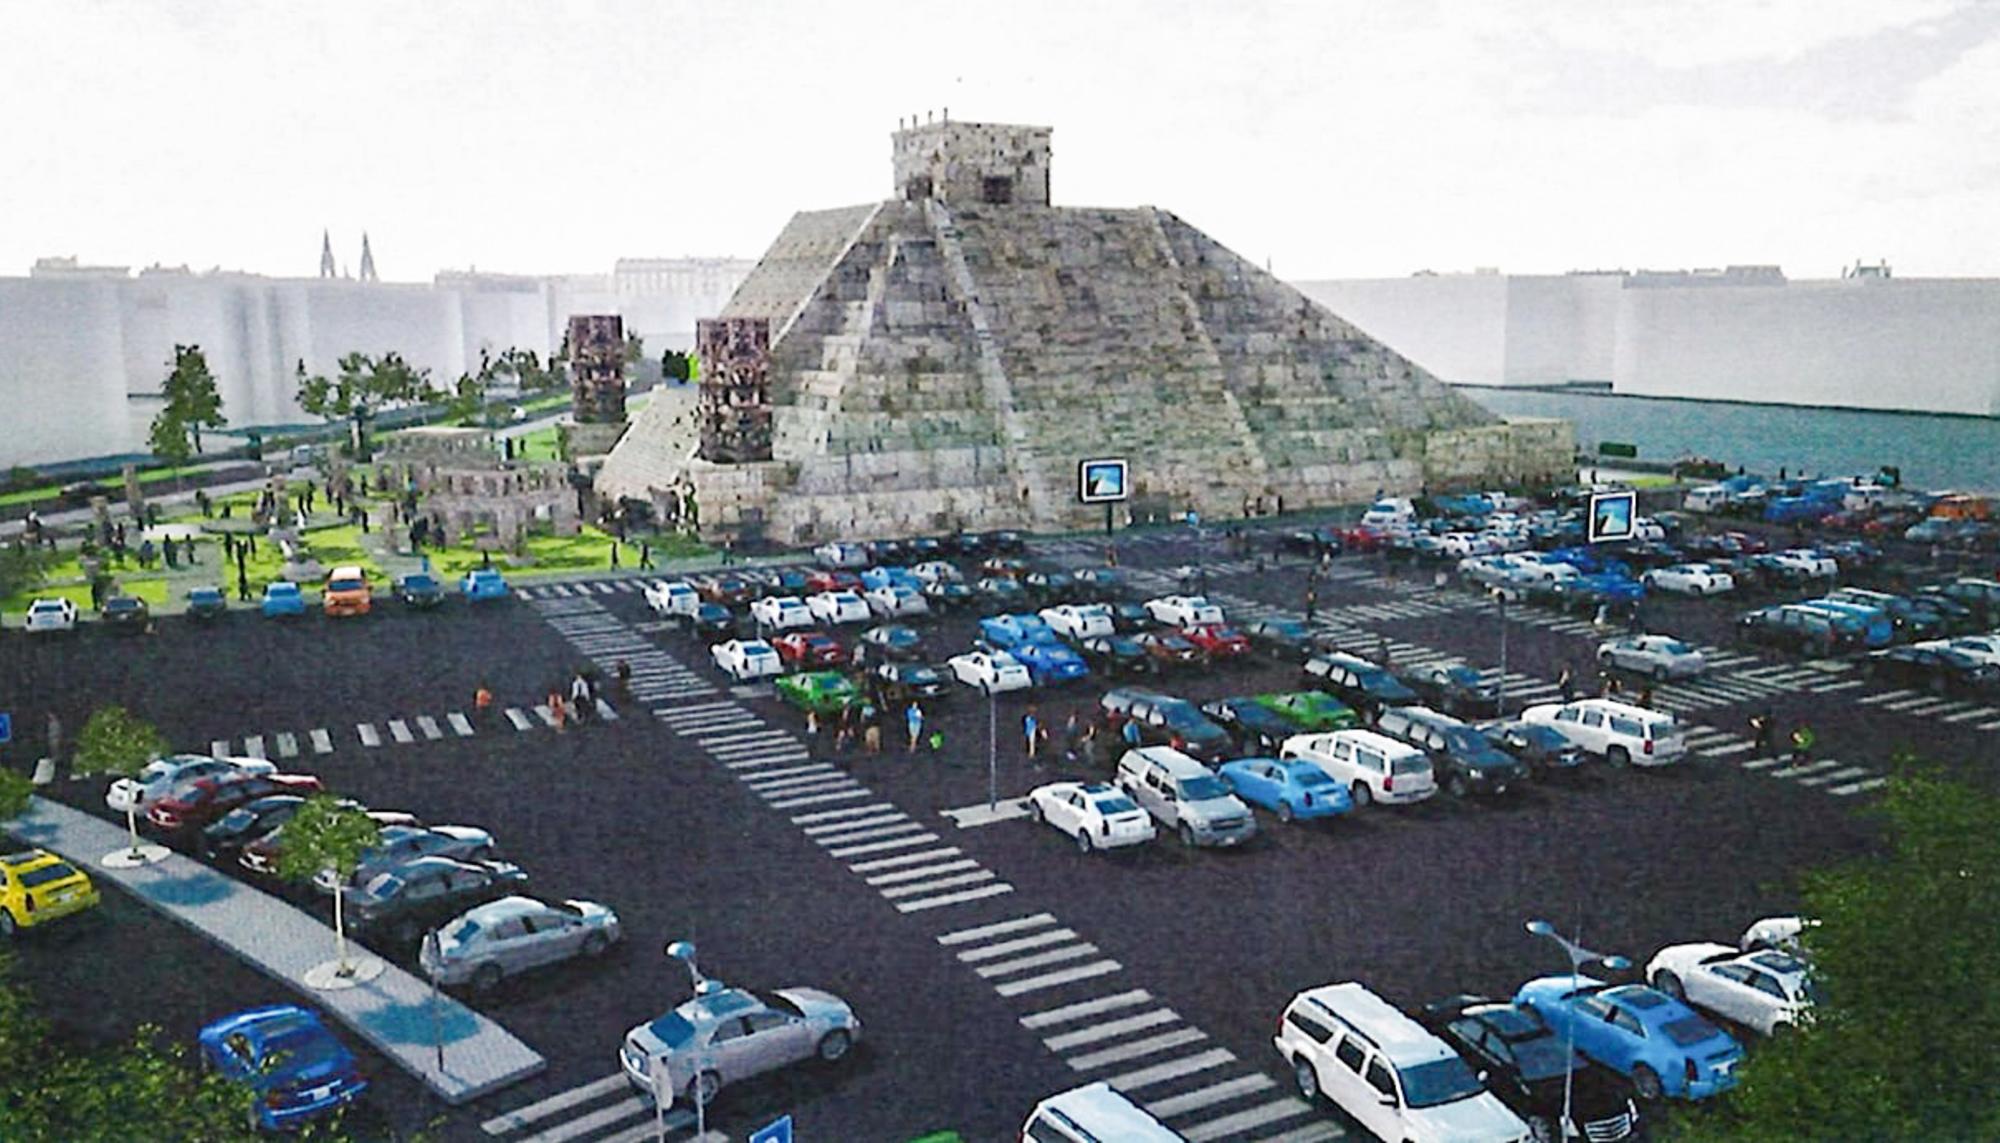 La piramide de Nacho Cano